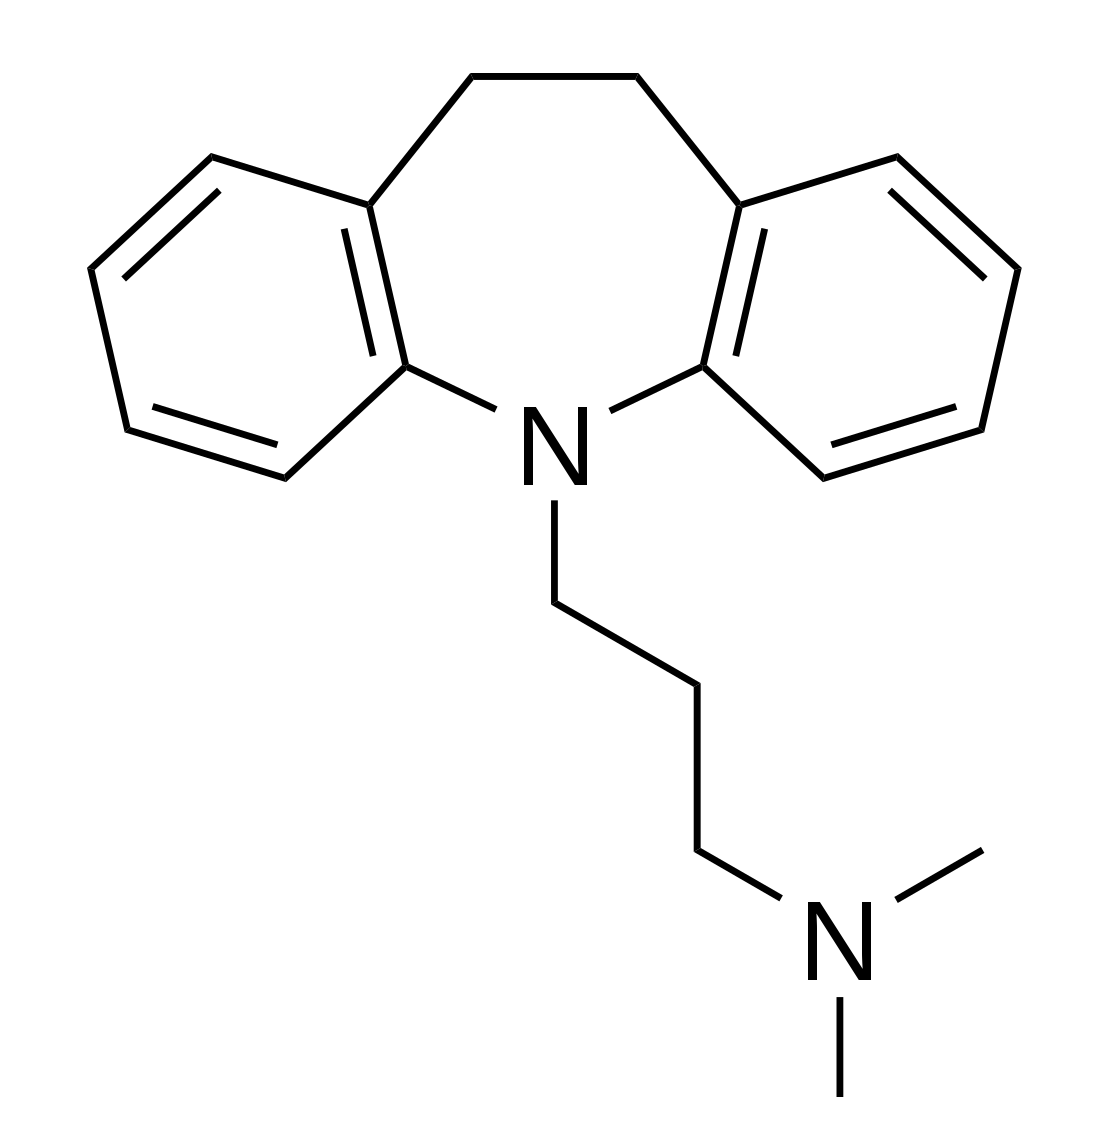 Estructura química de la imipramina, el primer atc